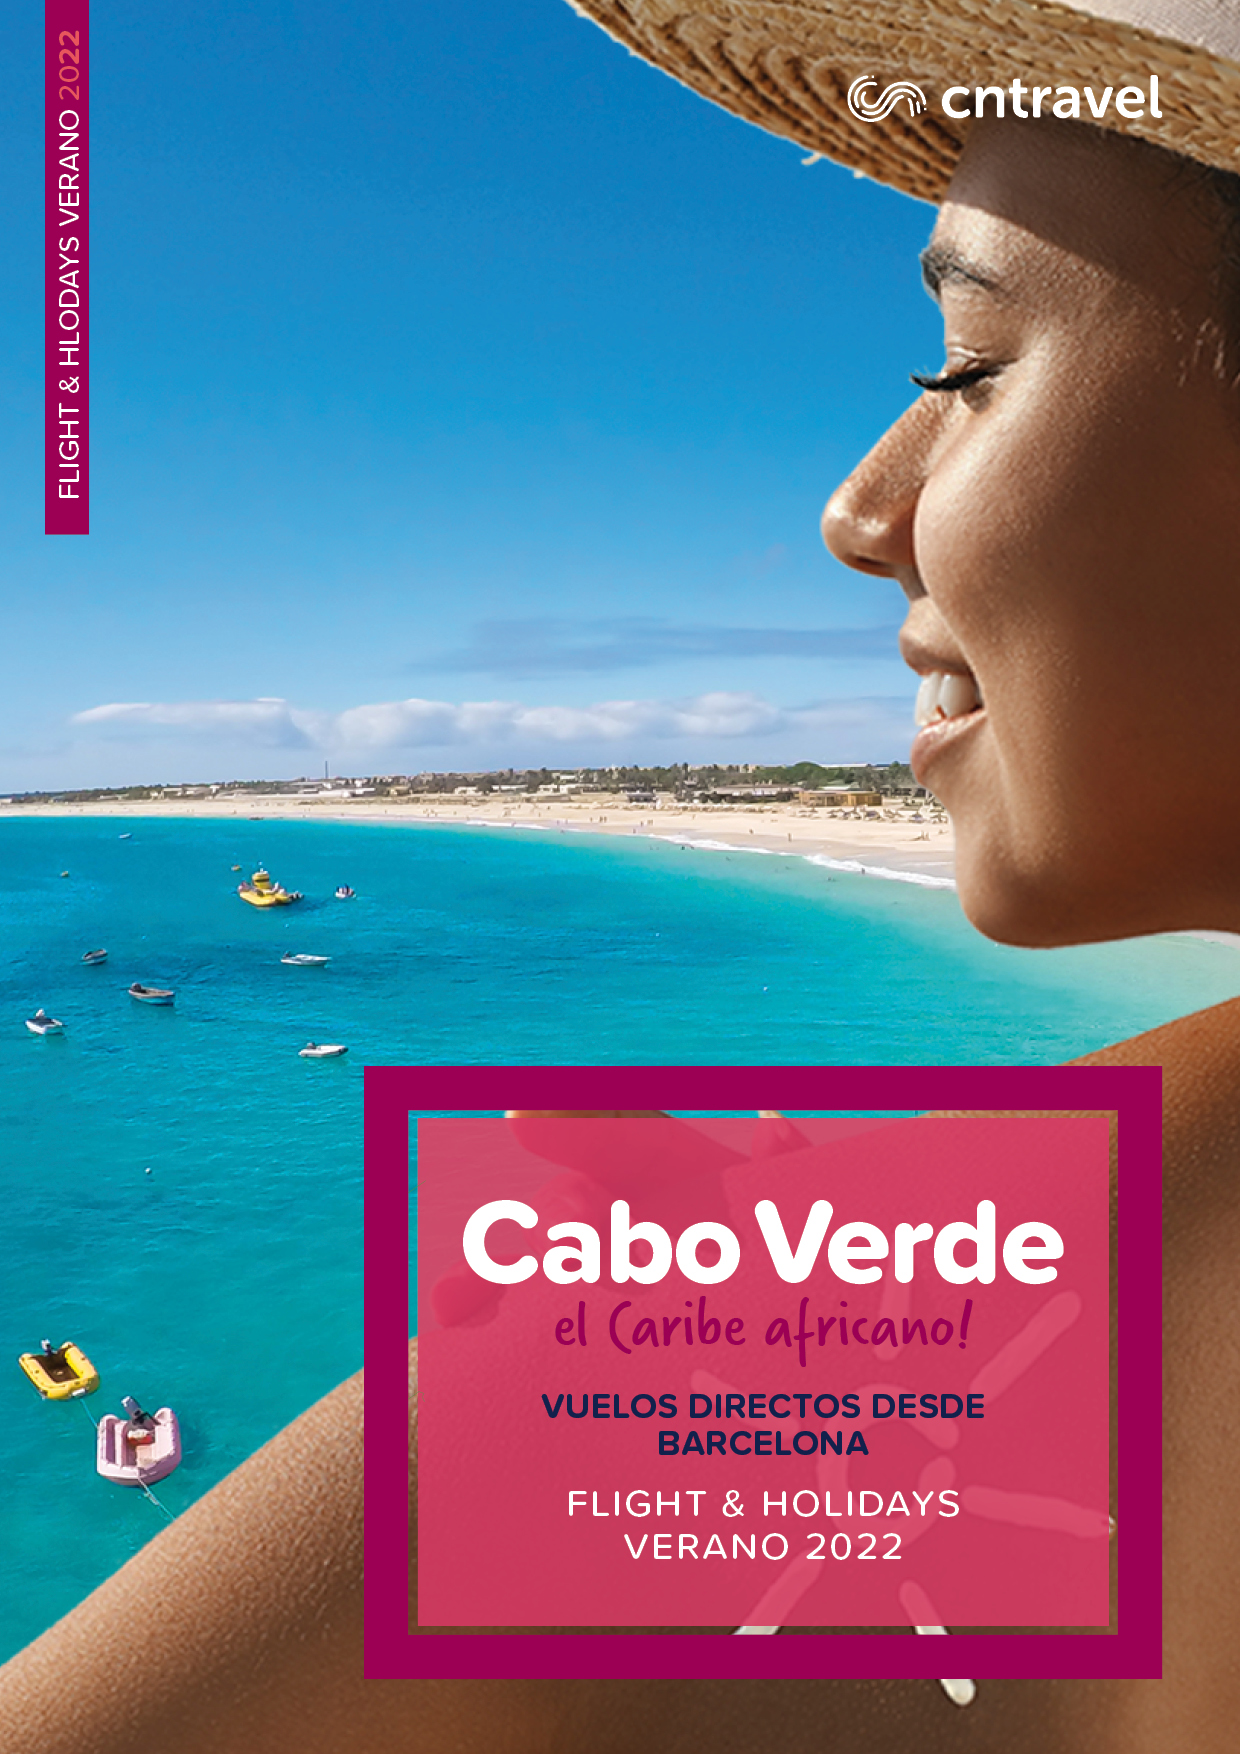 Catalogo CN Travel Vacaciones en Islas de Cabo Verde 2022 vuelos directos desde Barcelona